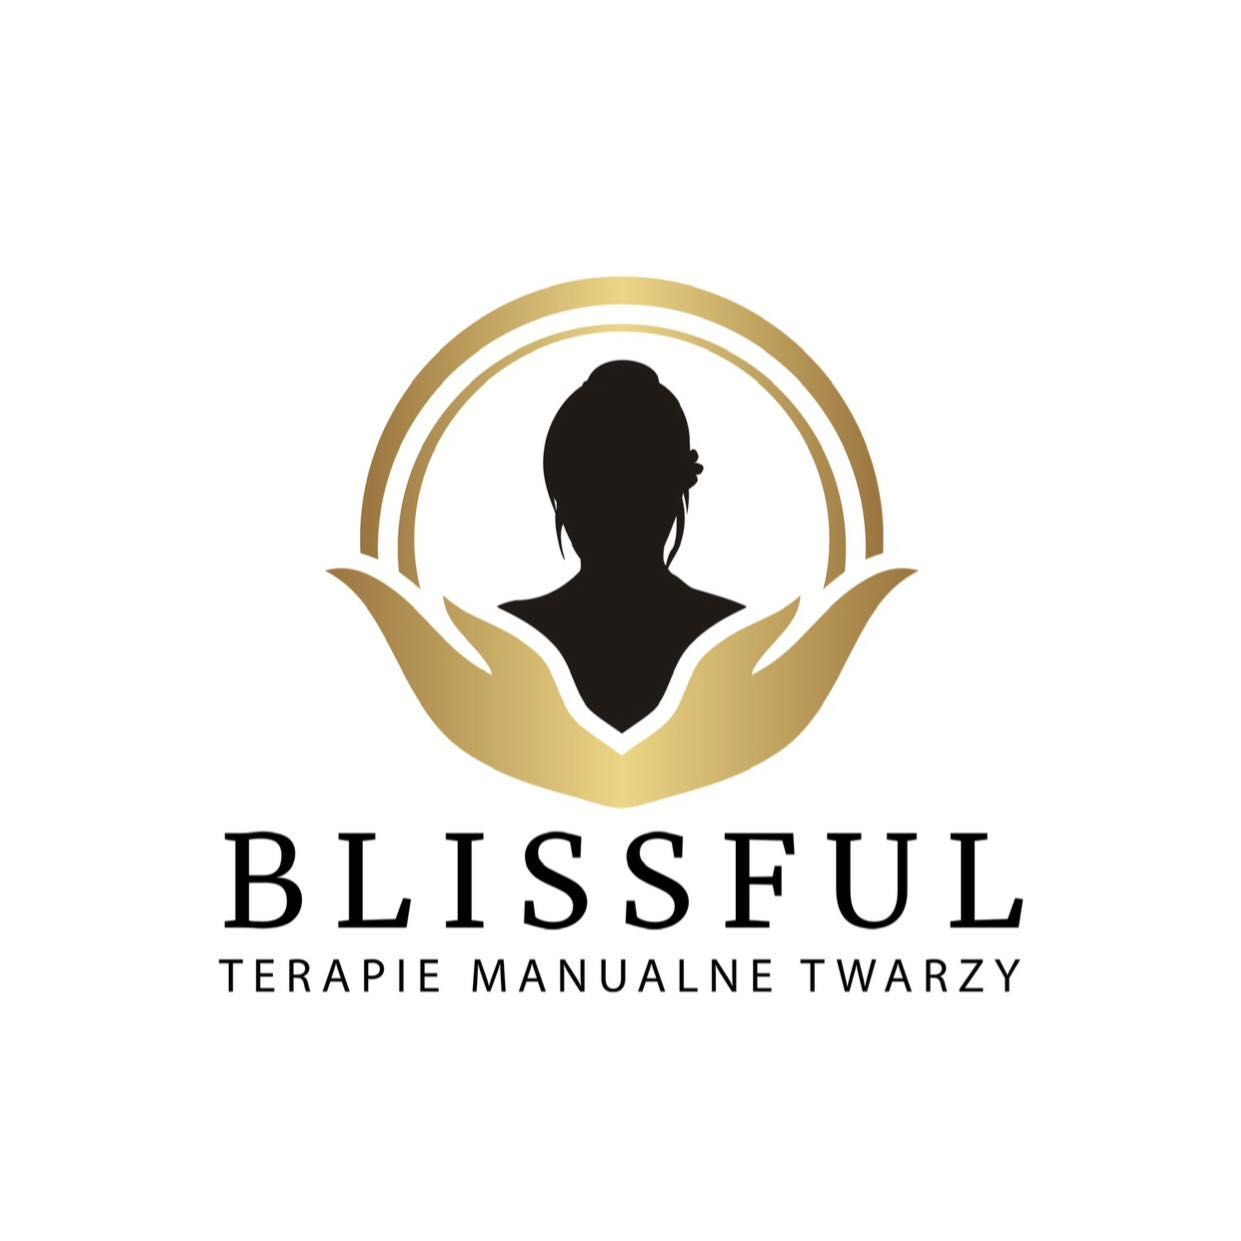 Terapie Manualne Twarzy „Blissful”, Pochyła 23, 1D, 53-512, Wrocław